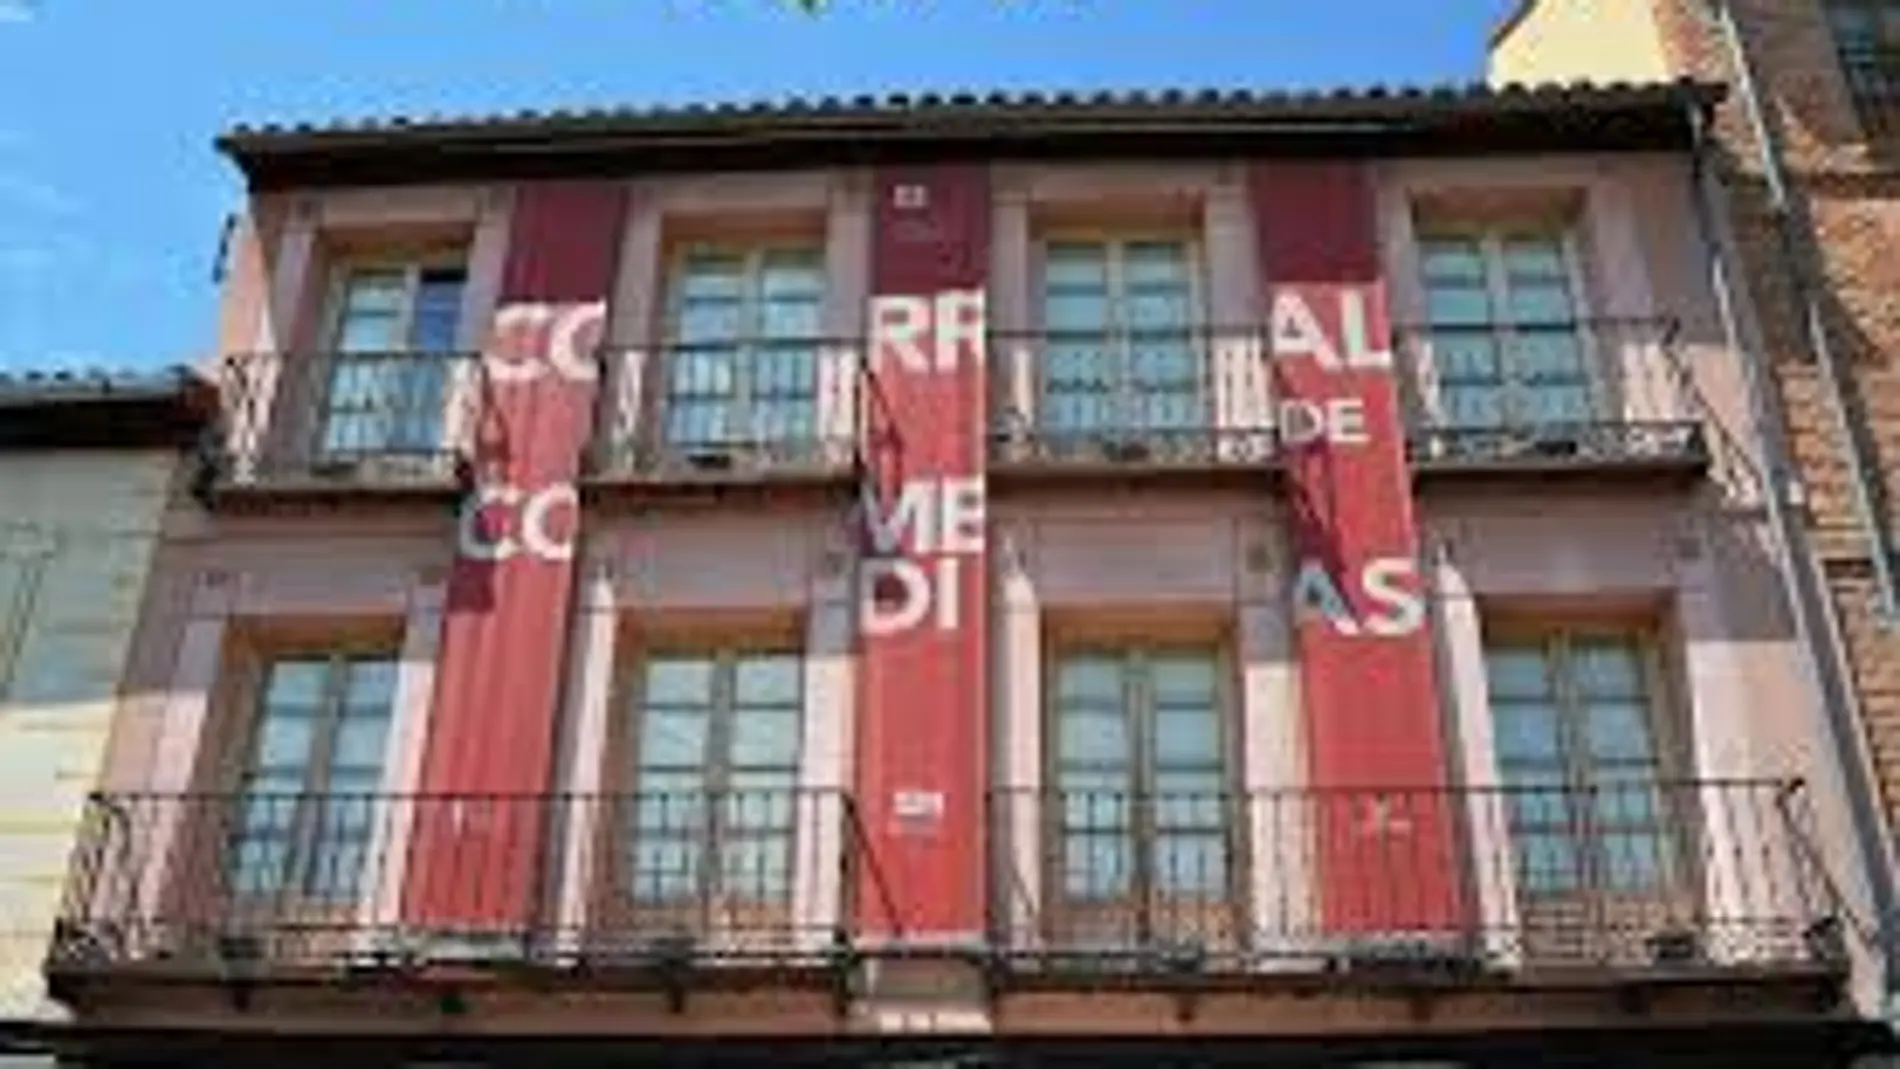 Corral de Comedias de Alcalá de Henares